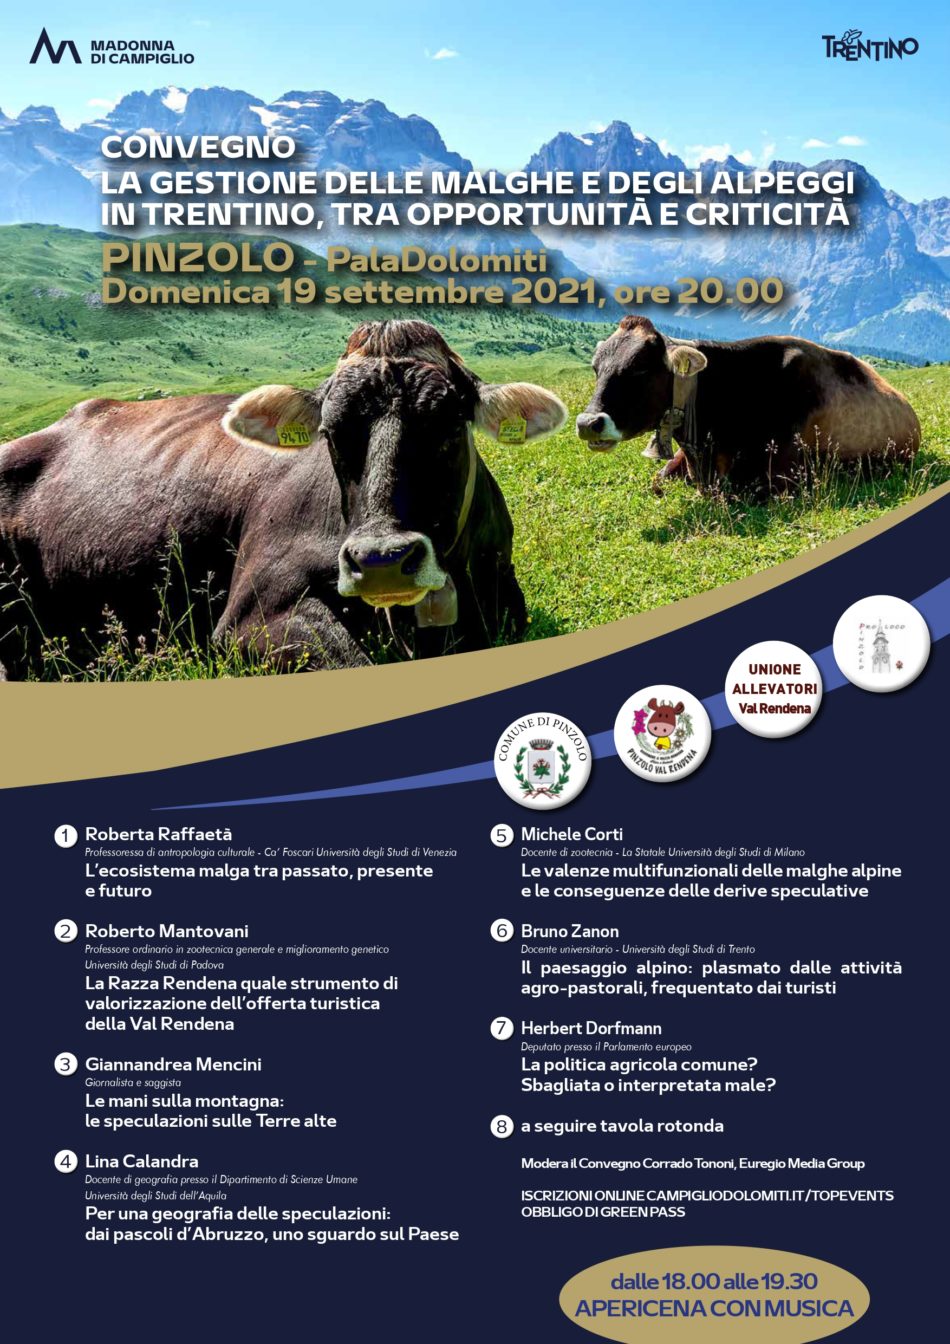 Convegno “Malghe ed Alpeggi in Trentino” – Pinzolo, domenica 19 settembre 2021